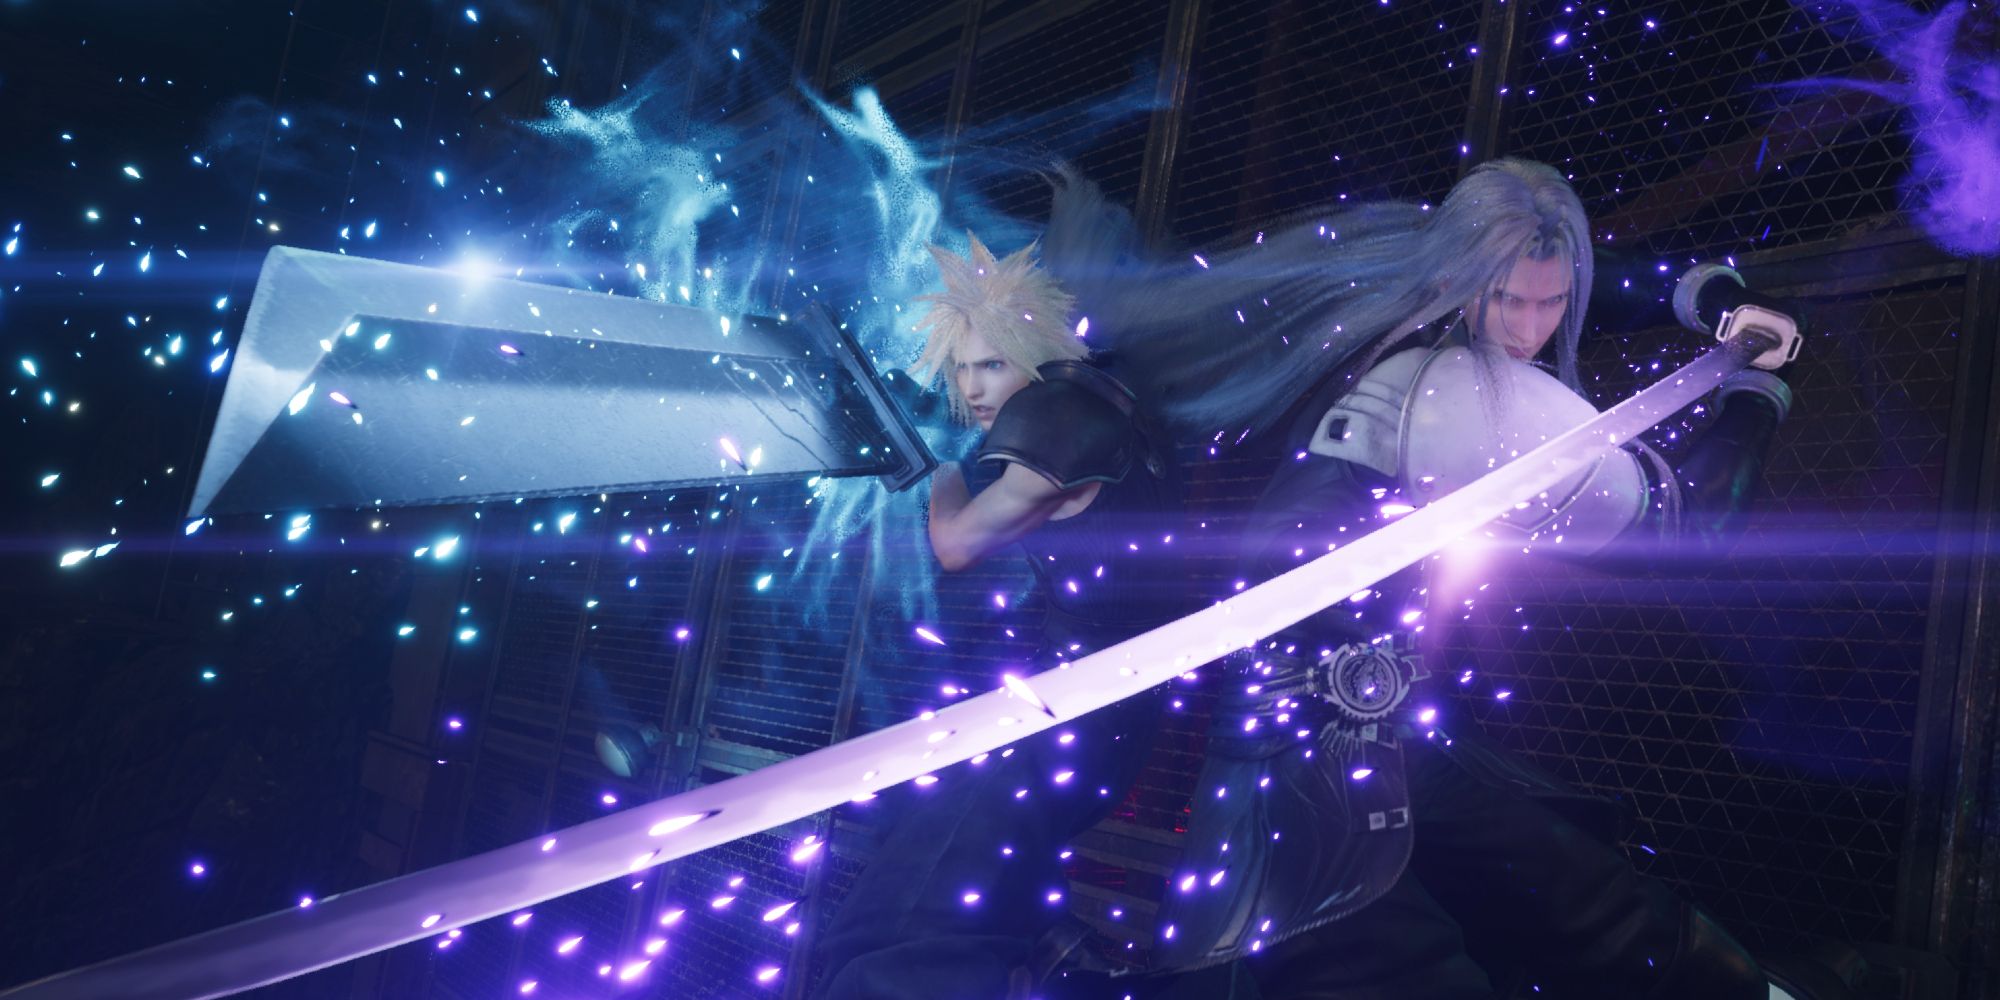 Cloud e Sephiroth costas com costas, espadas em punho enquanto alinham uma habilidade de sinergia em uma captura de tela de FF7 Rebirth.